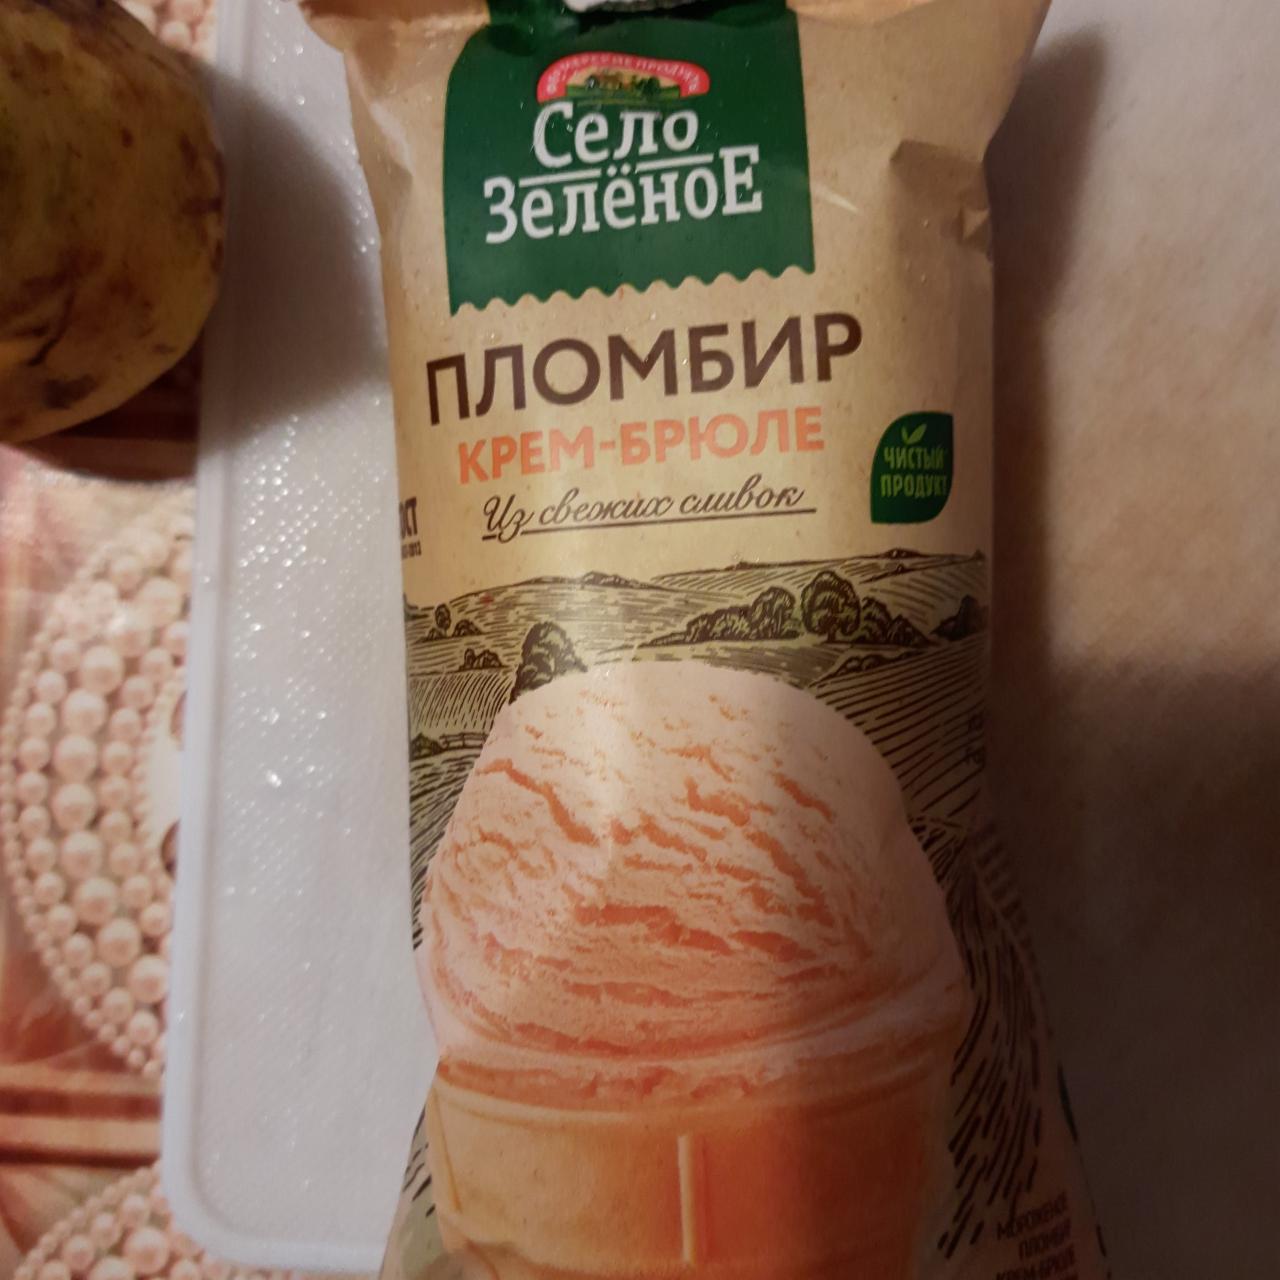 Фото - мороженое пломбир 18% крем-брюле в вафельном стаканчике Село Зеленое